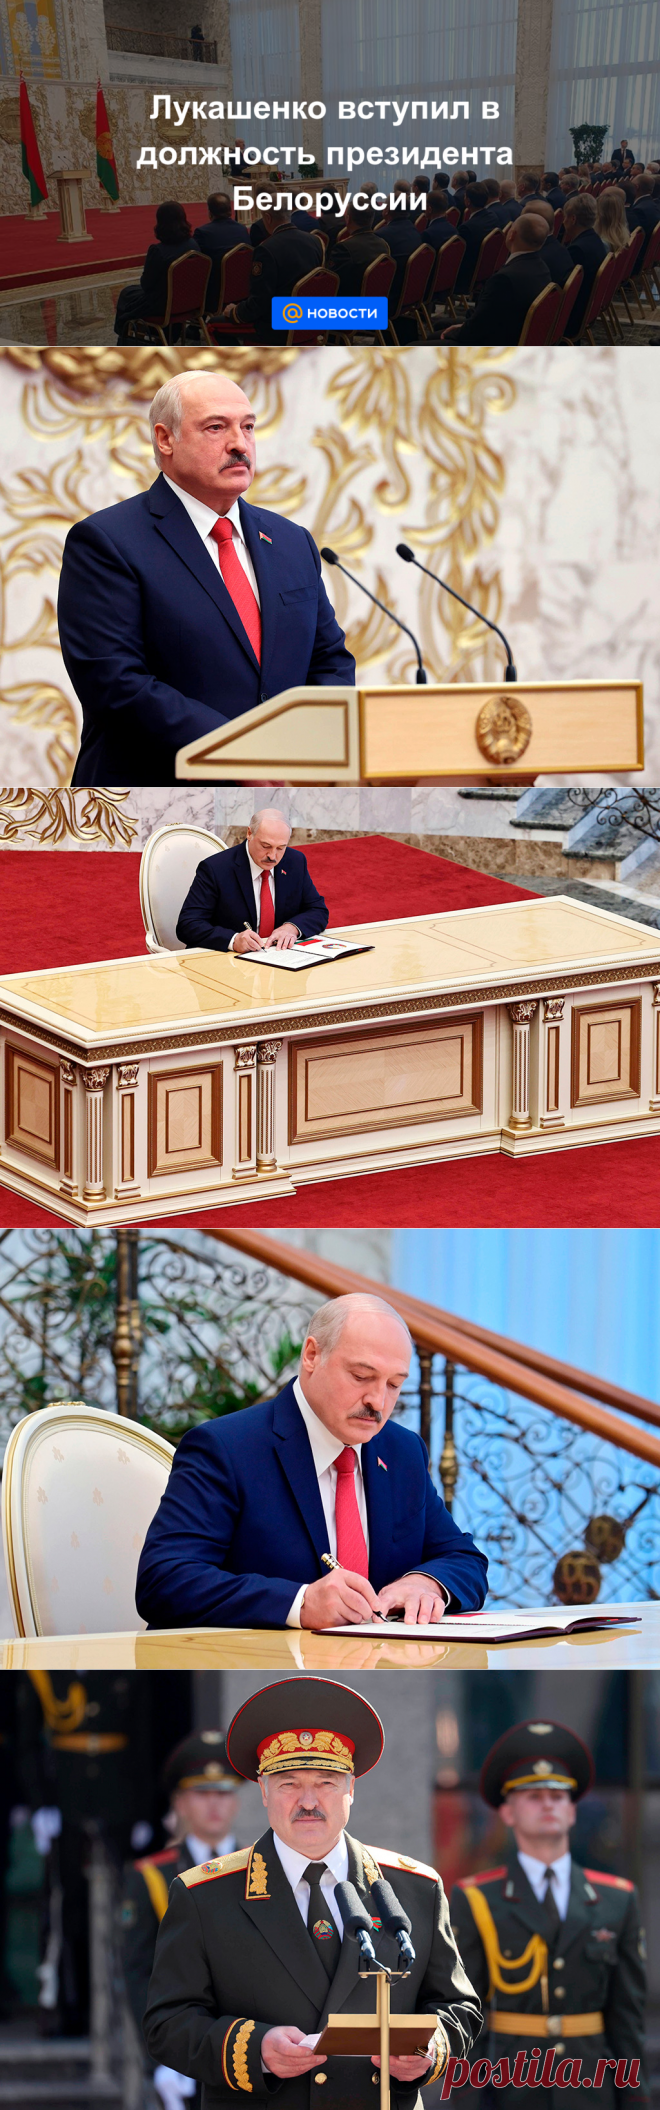 23.09.20-Лукашенко вступил в должность президента Белоруссии - Новости Mail.ru